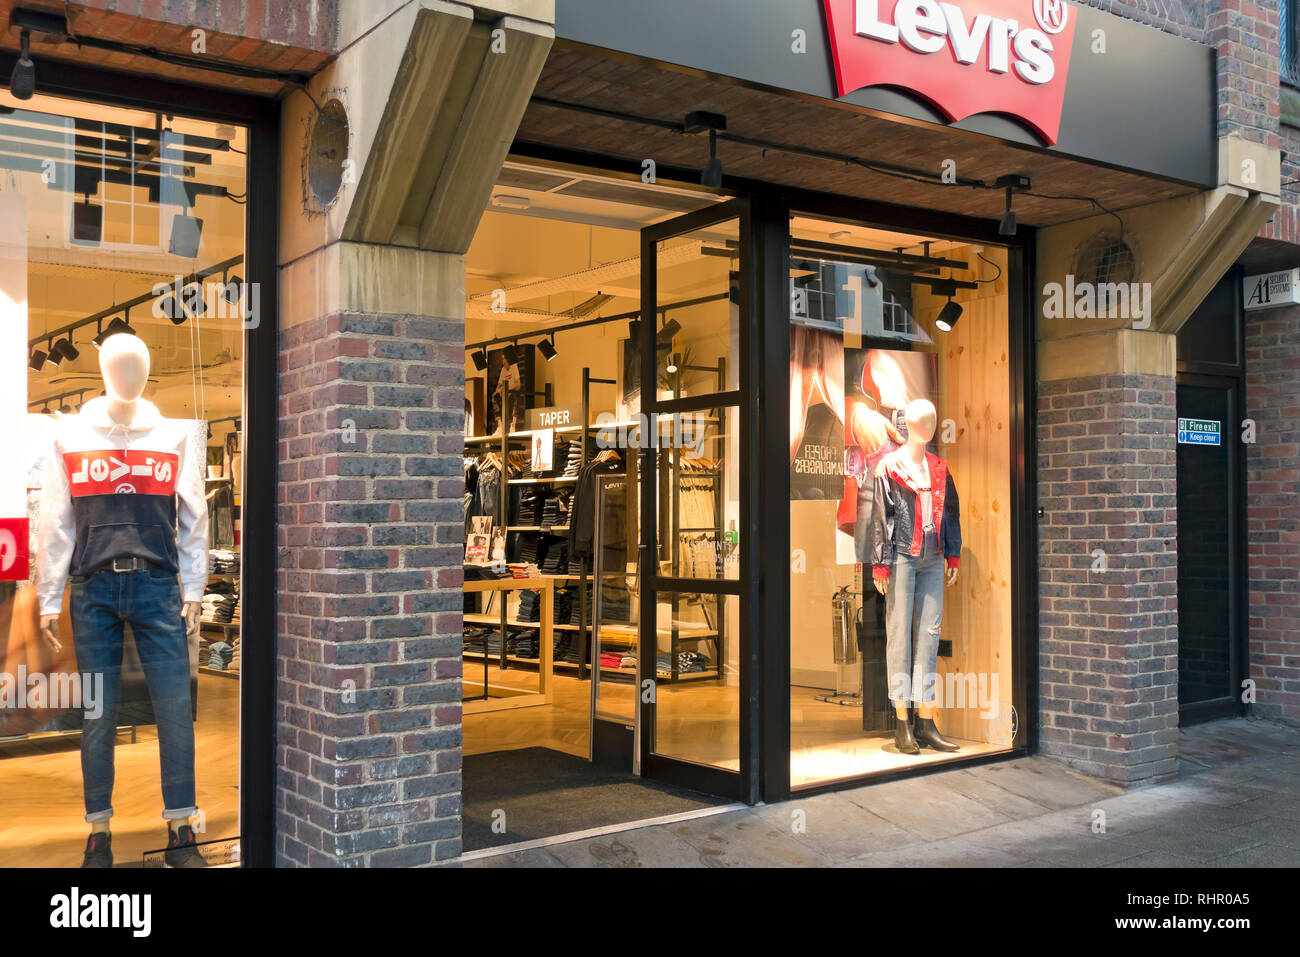 levis shop glasgow